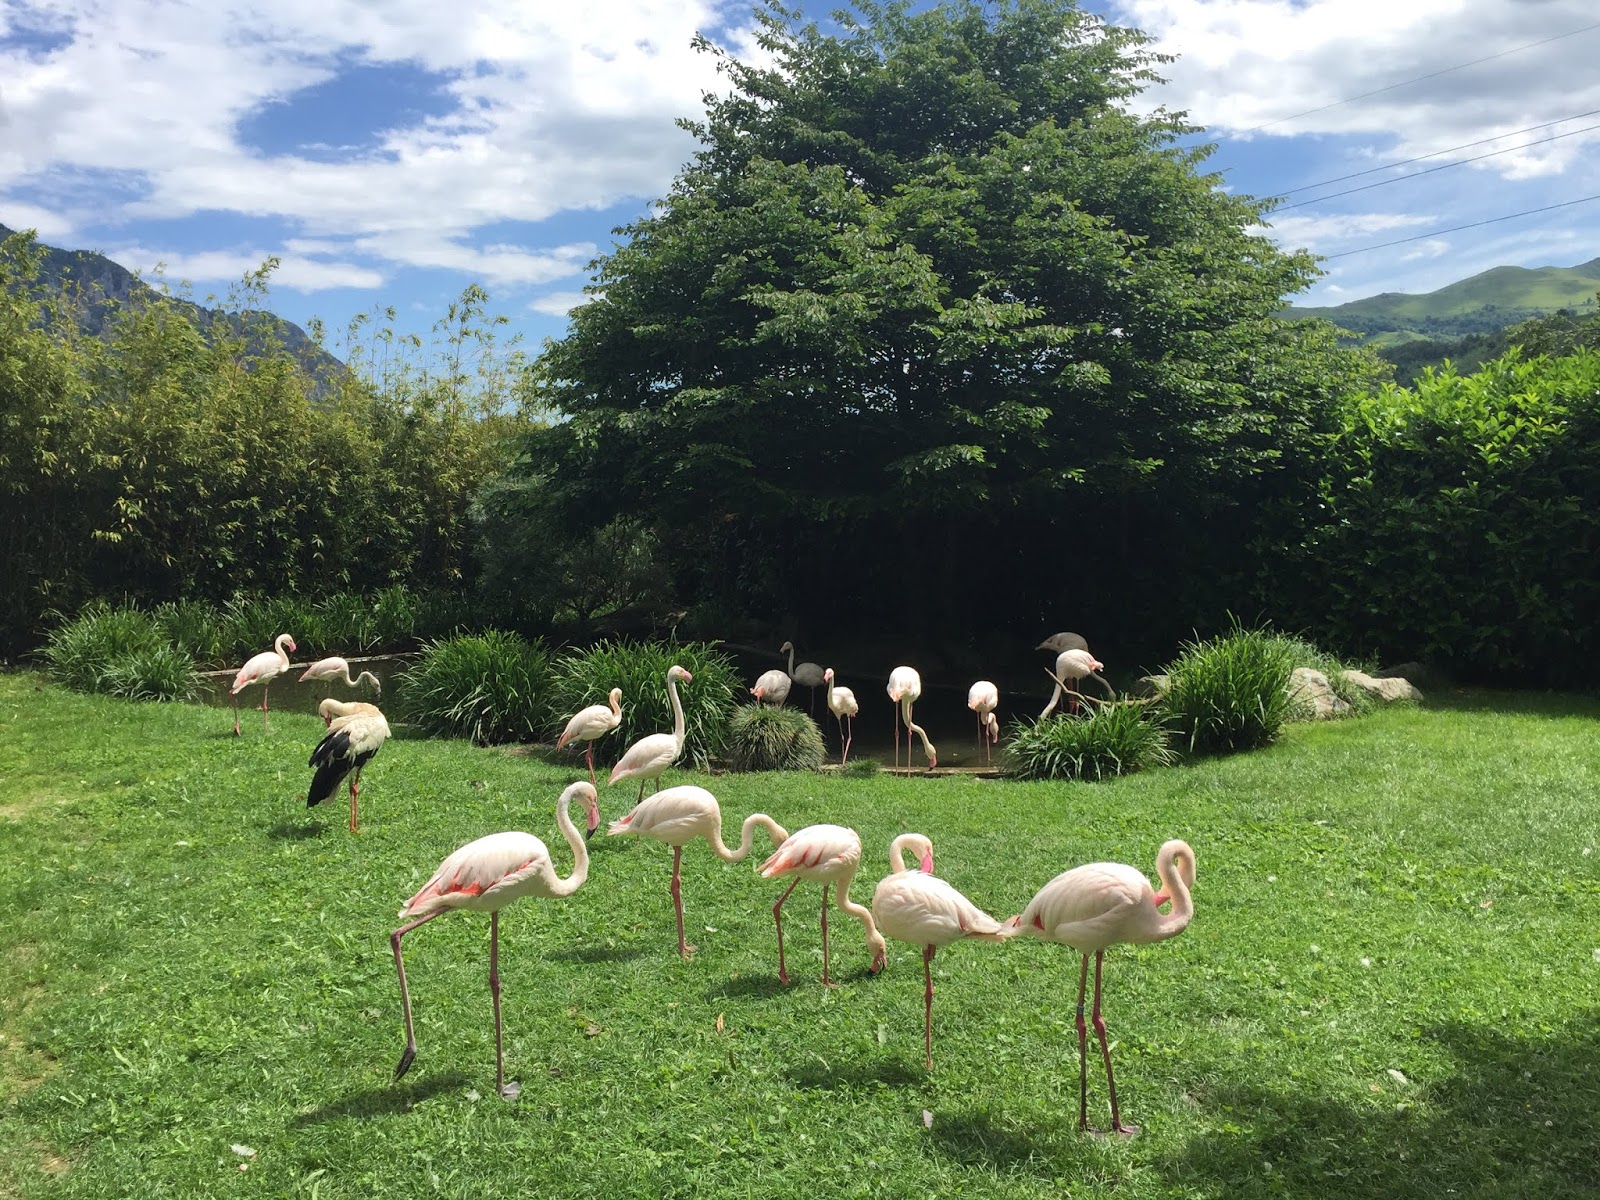 Le parc animalier des Pyrénées renoue avec le public au printemps